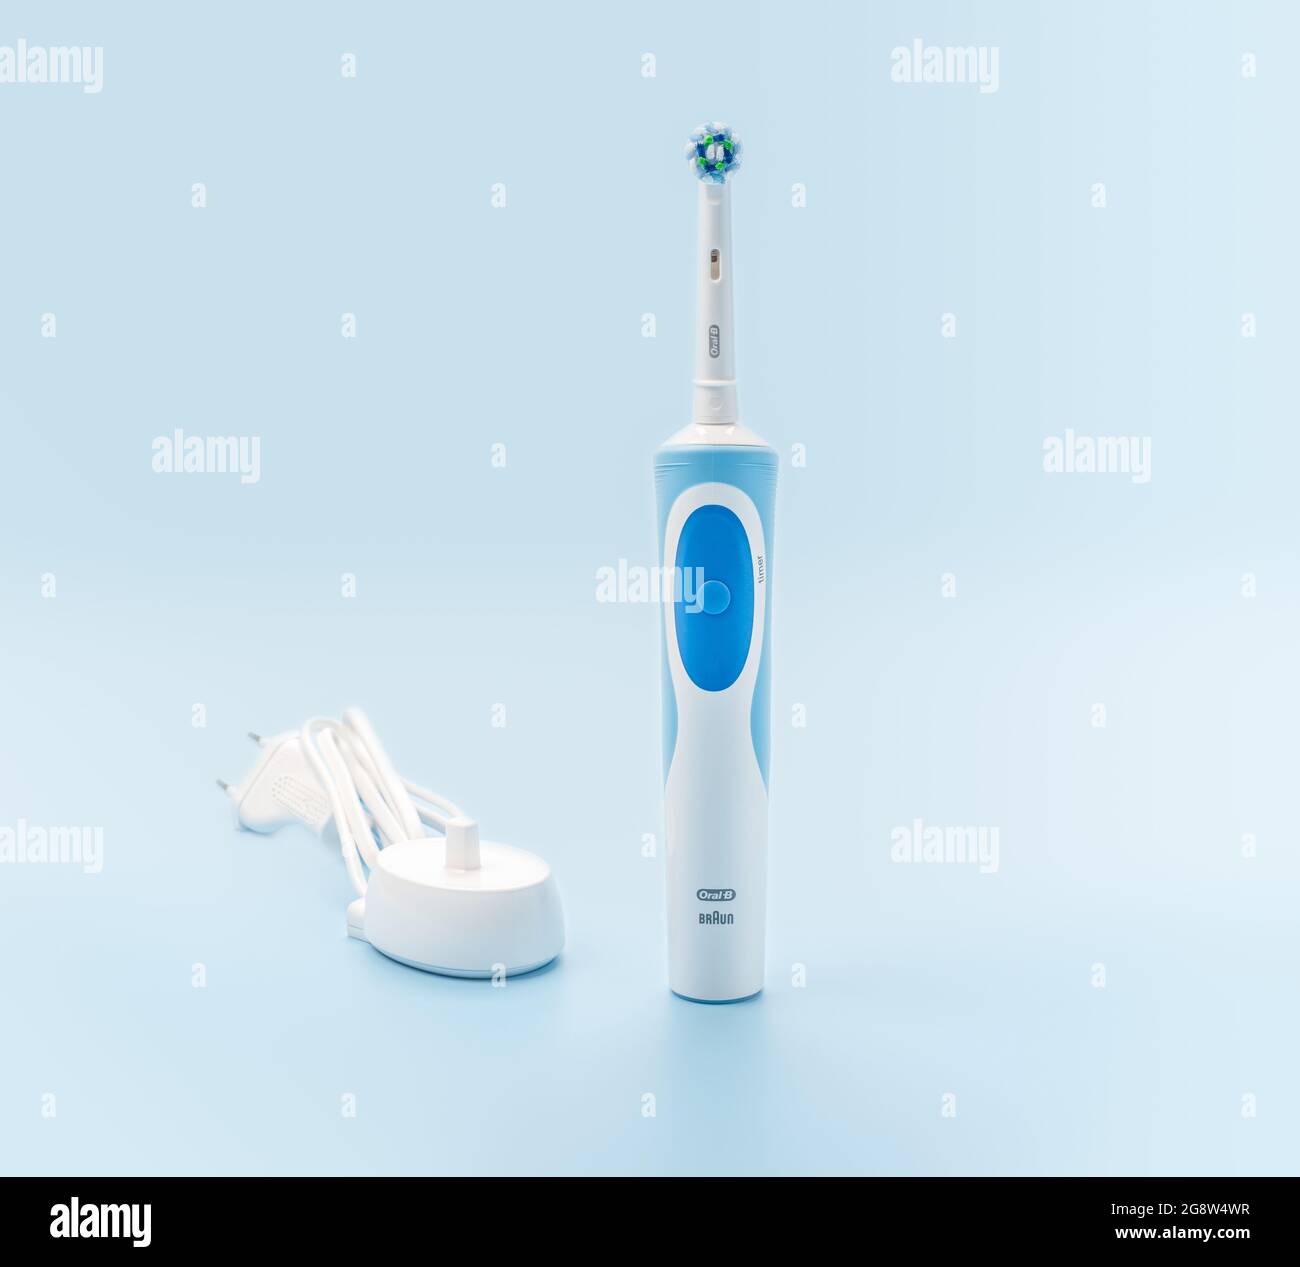 Rusia, Moscú, 22 de julio de 2021: Braun Oral-B cepillo dental eléctrico  recargable juego con cargador. Concepto de cuidado oral profesional y salud  Fotografía de stock - Alamy